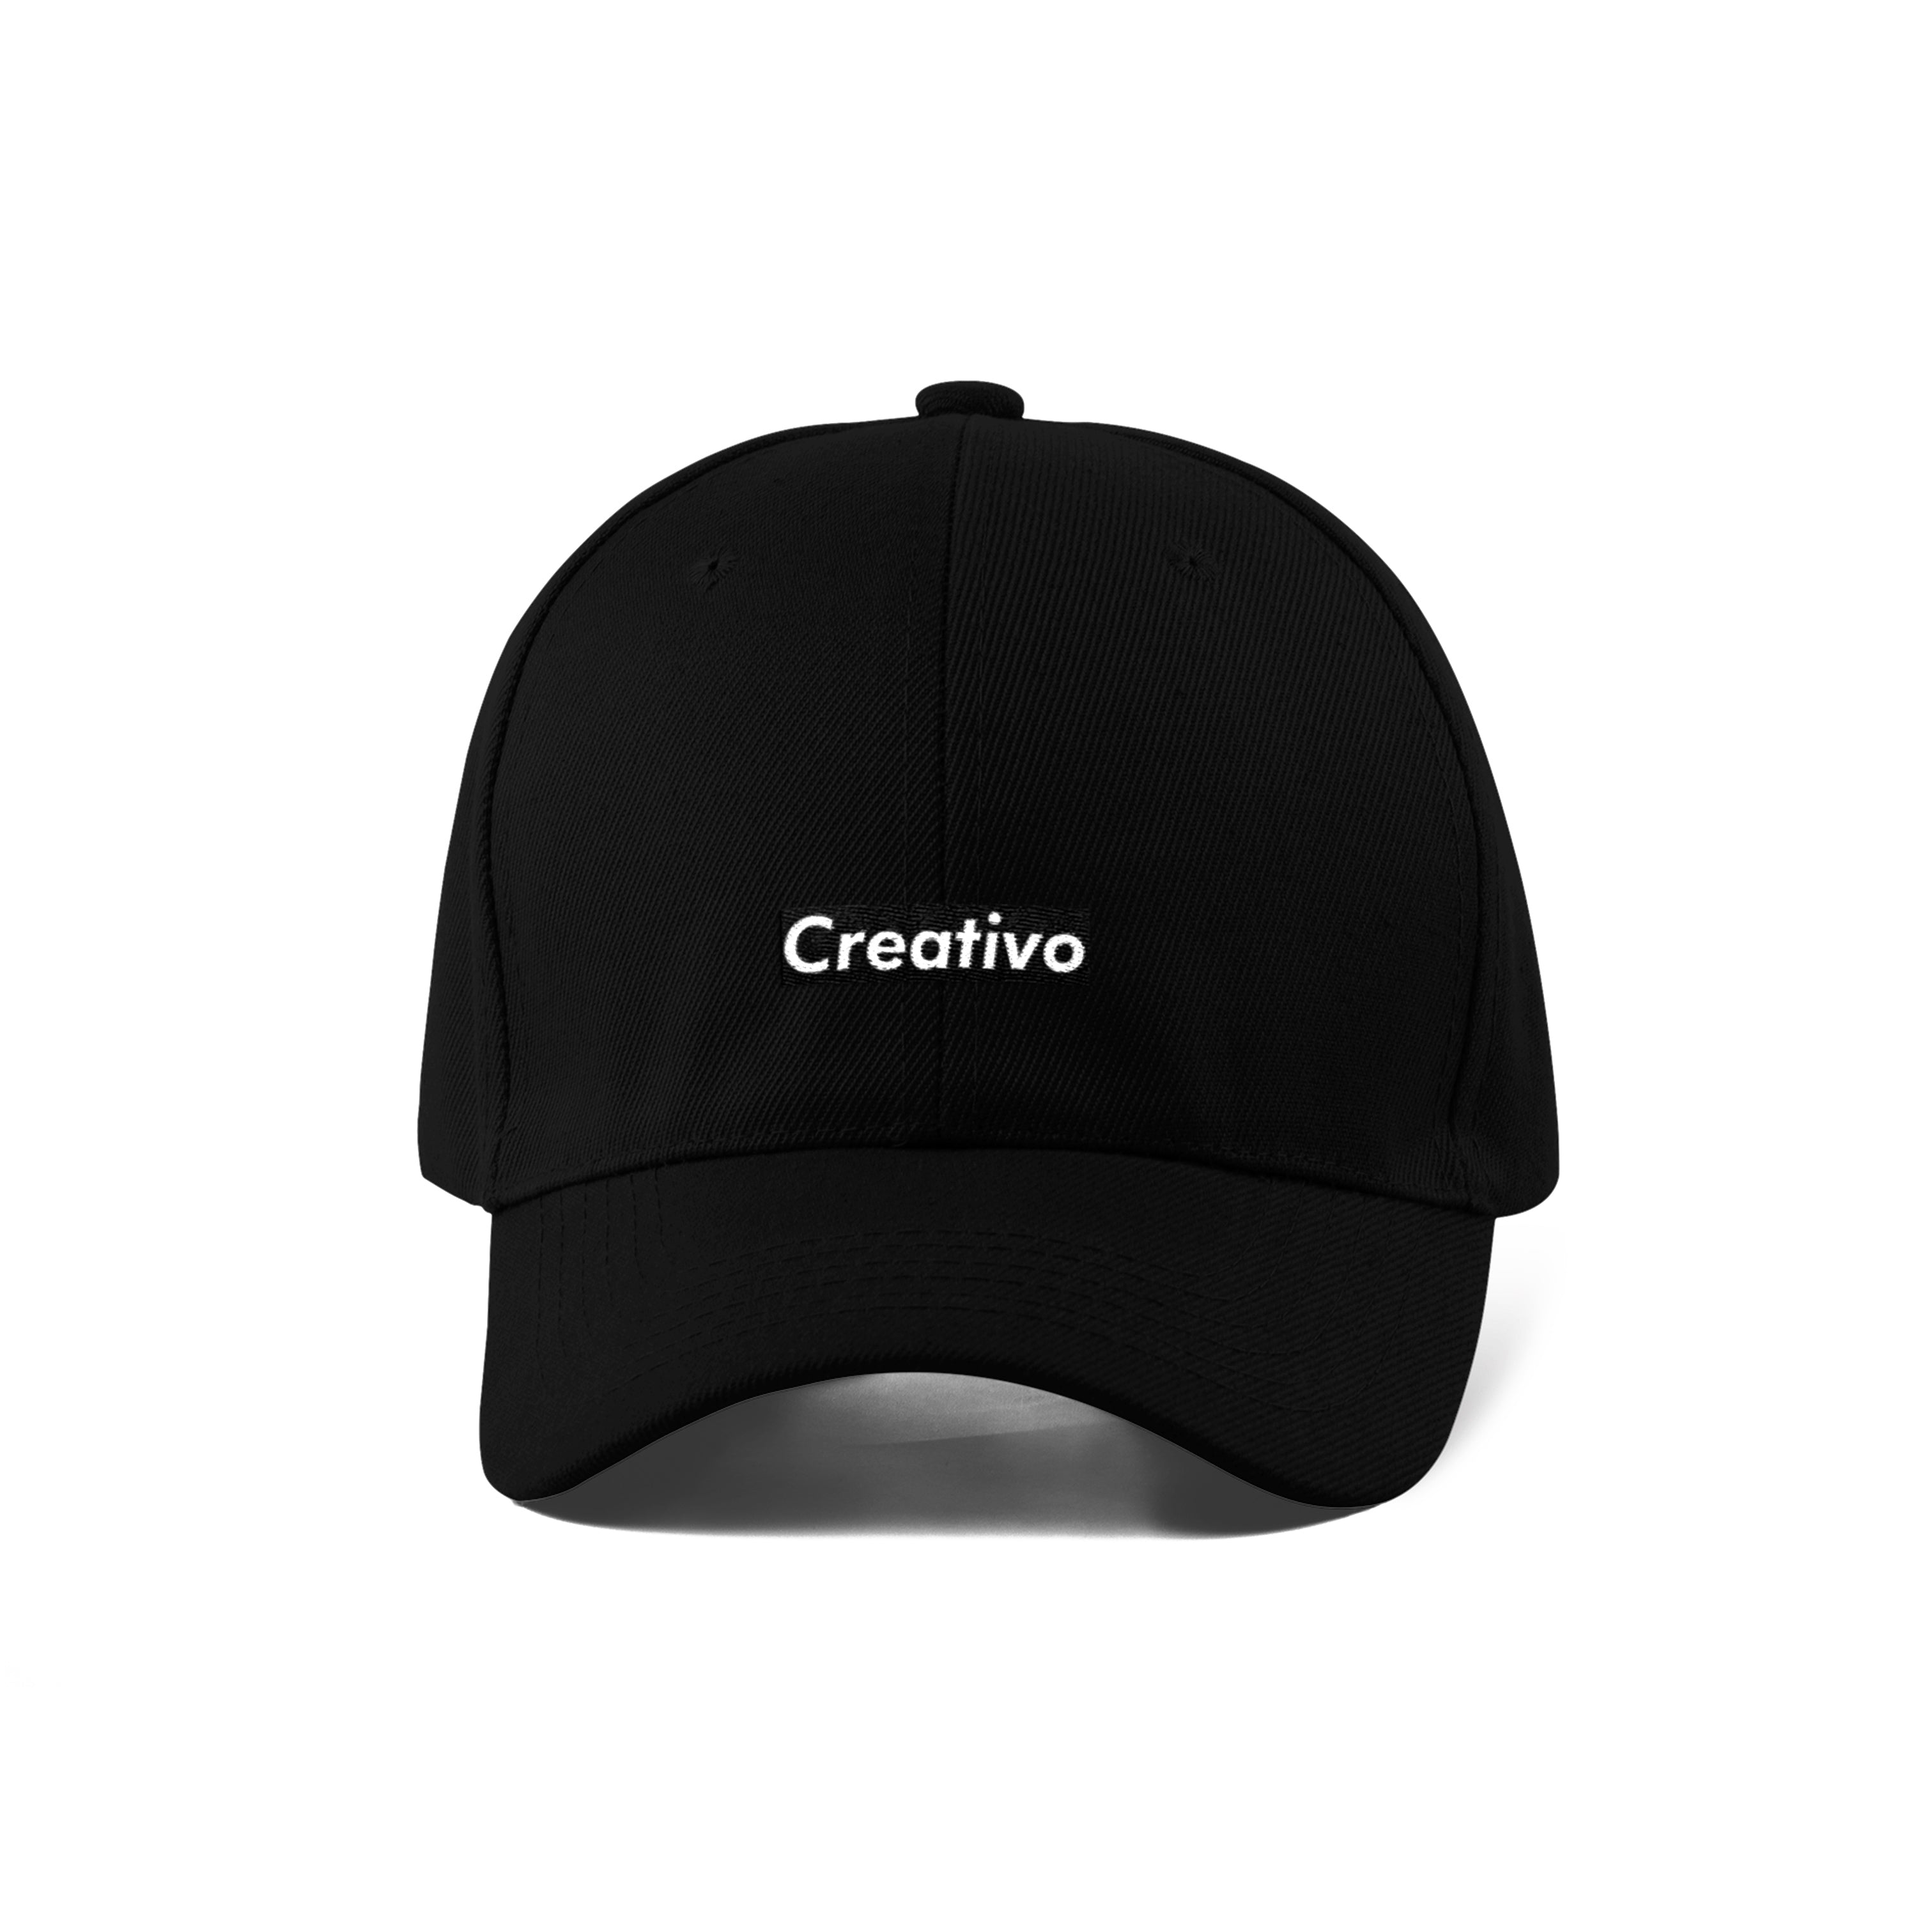 Creativo gorra